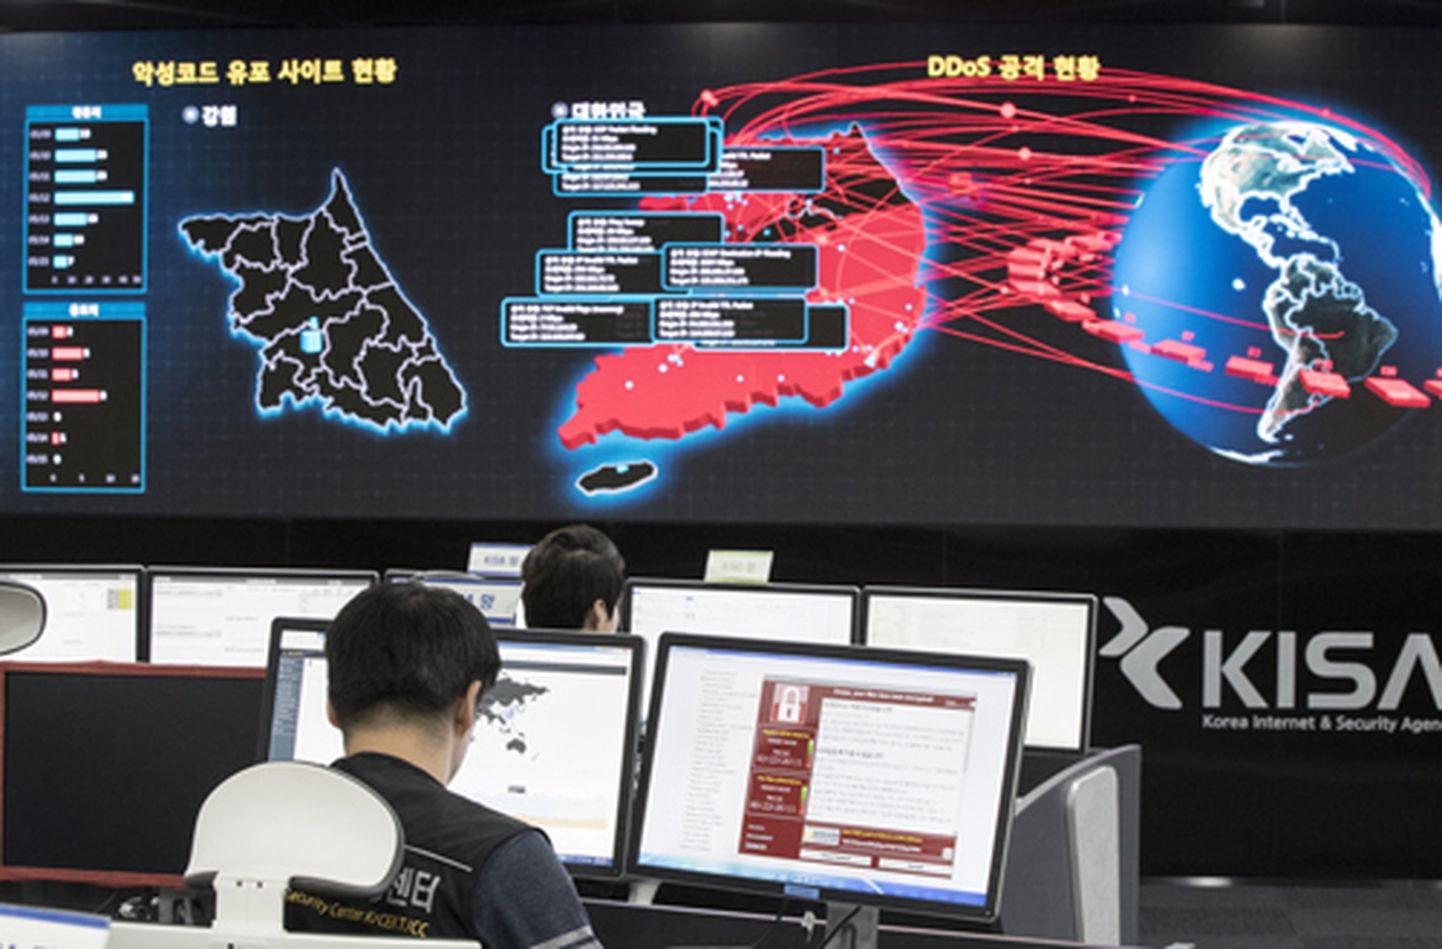 Lõuna-Korea Interneti ja Julgeolekuagentuuri töötajad jälgivad võimalikke pahavararünnakuid.